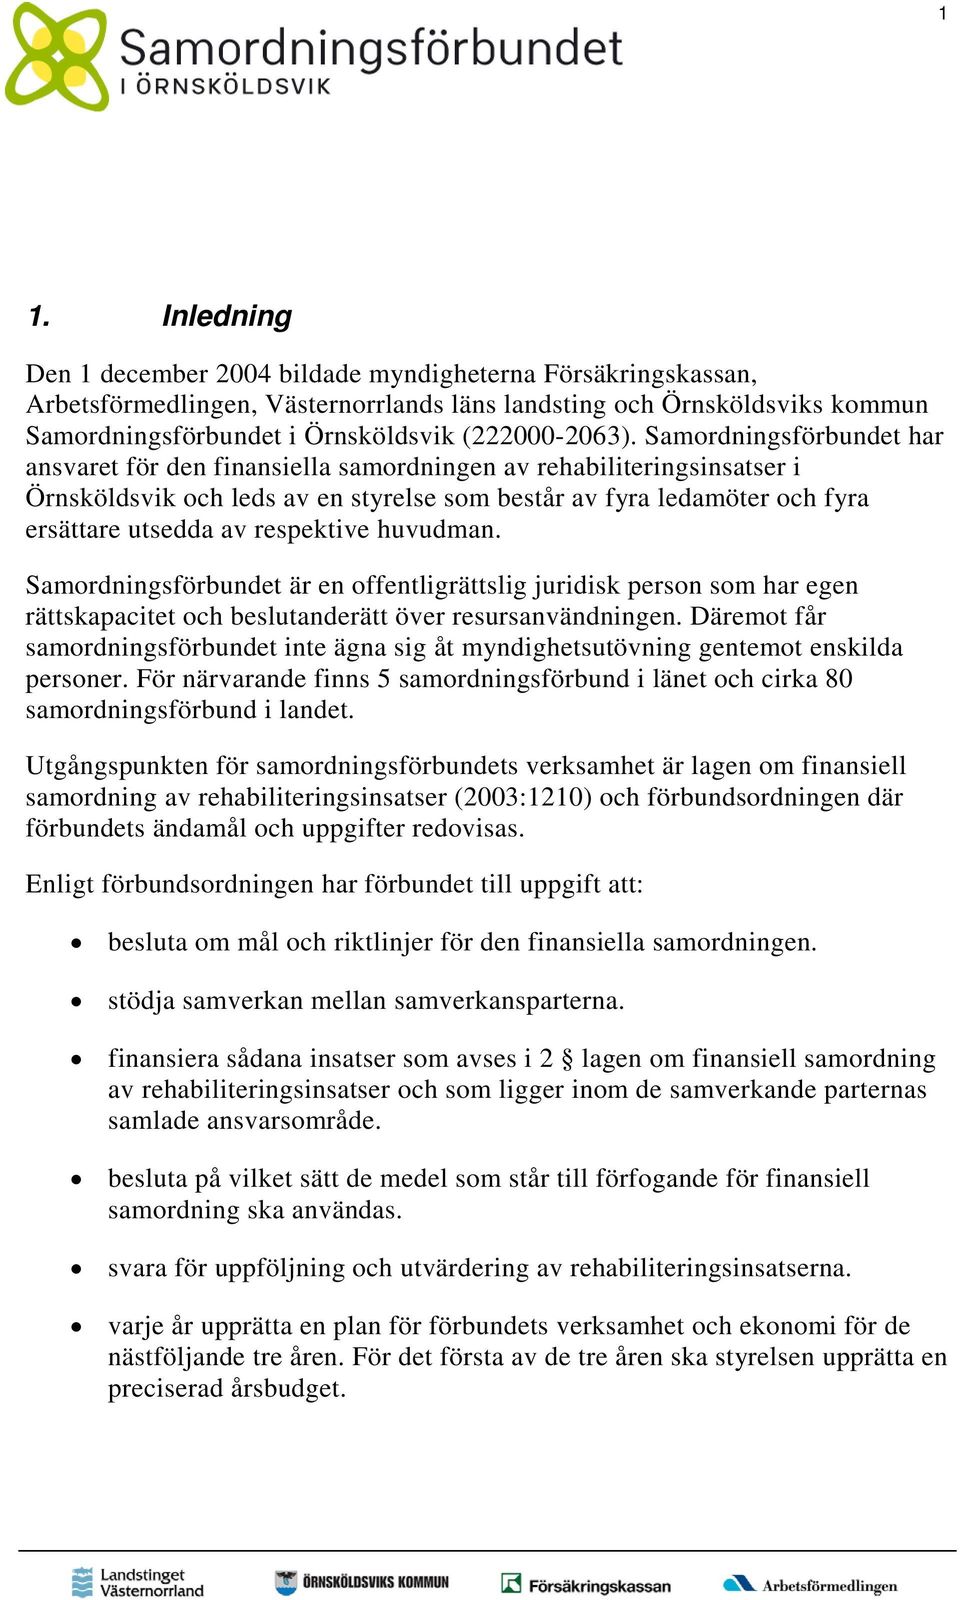 Samordningsförbundet har ansvaret för den finansiella samordningen av rehabiliteringsinsatser i Örnsköldsvik och leds av en styrelse som består av fyra ledamöter och fyra ersättare utsedda av